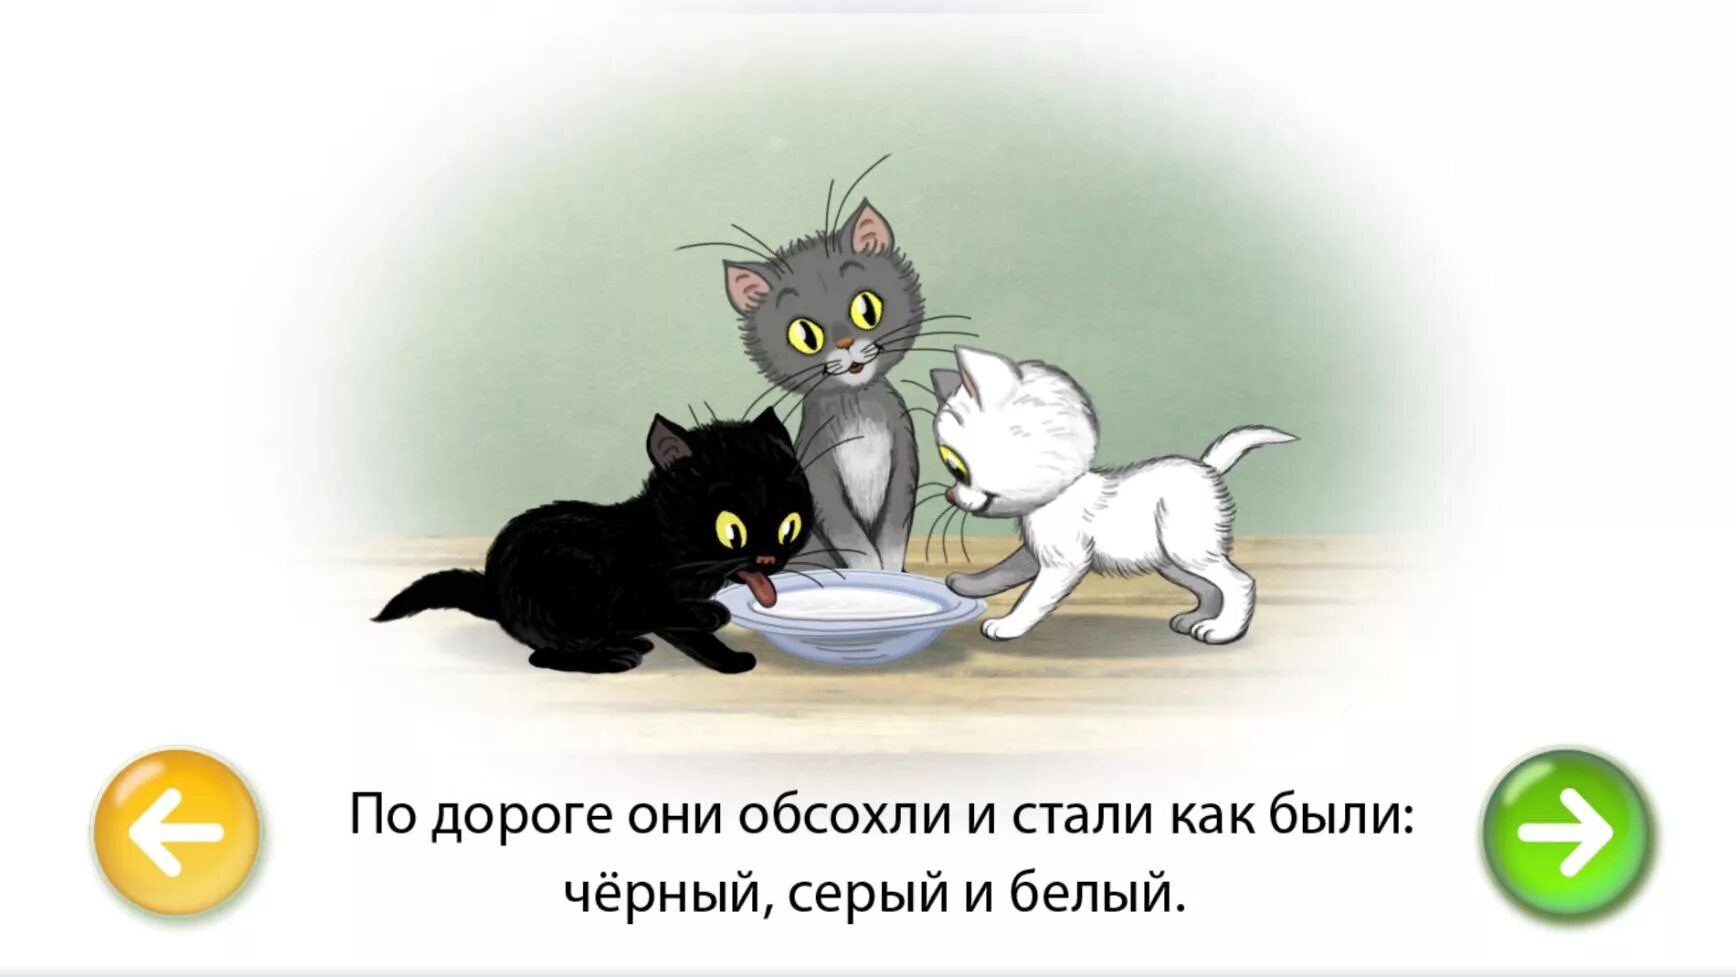 Сутеев 3 котенка. Сутеев в. "три котенка". Три котенка сказка Сутеев. Иллюстрации к сказке Сутеева три котенка. Три котенка слова